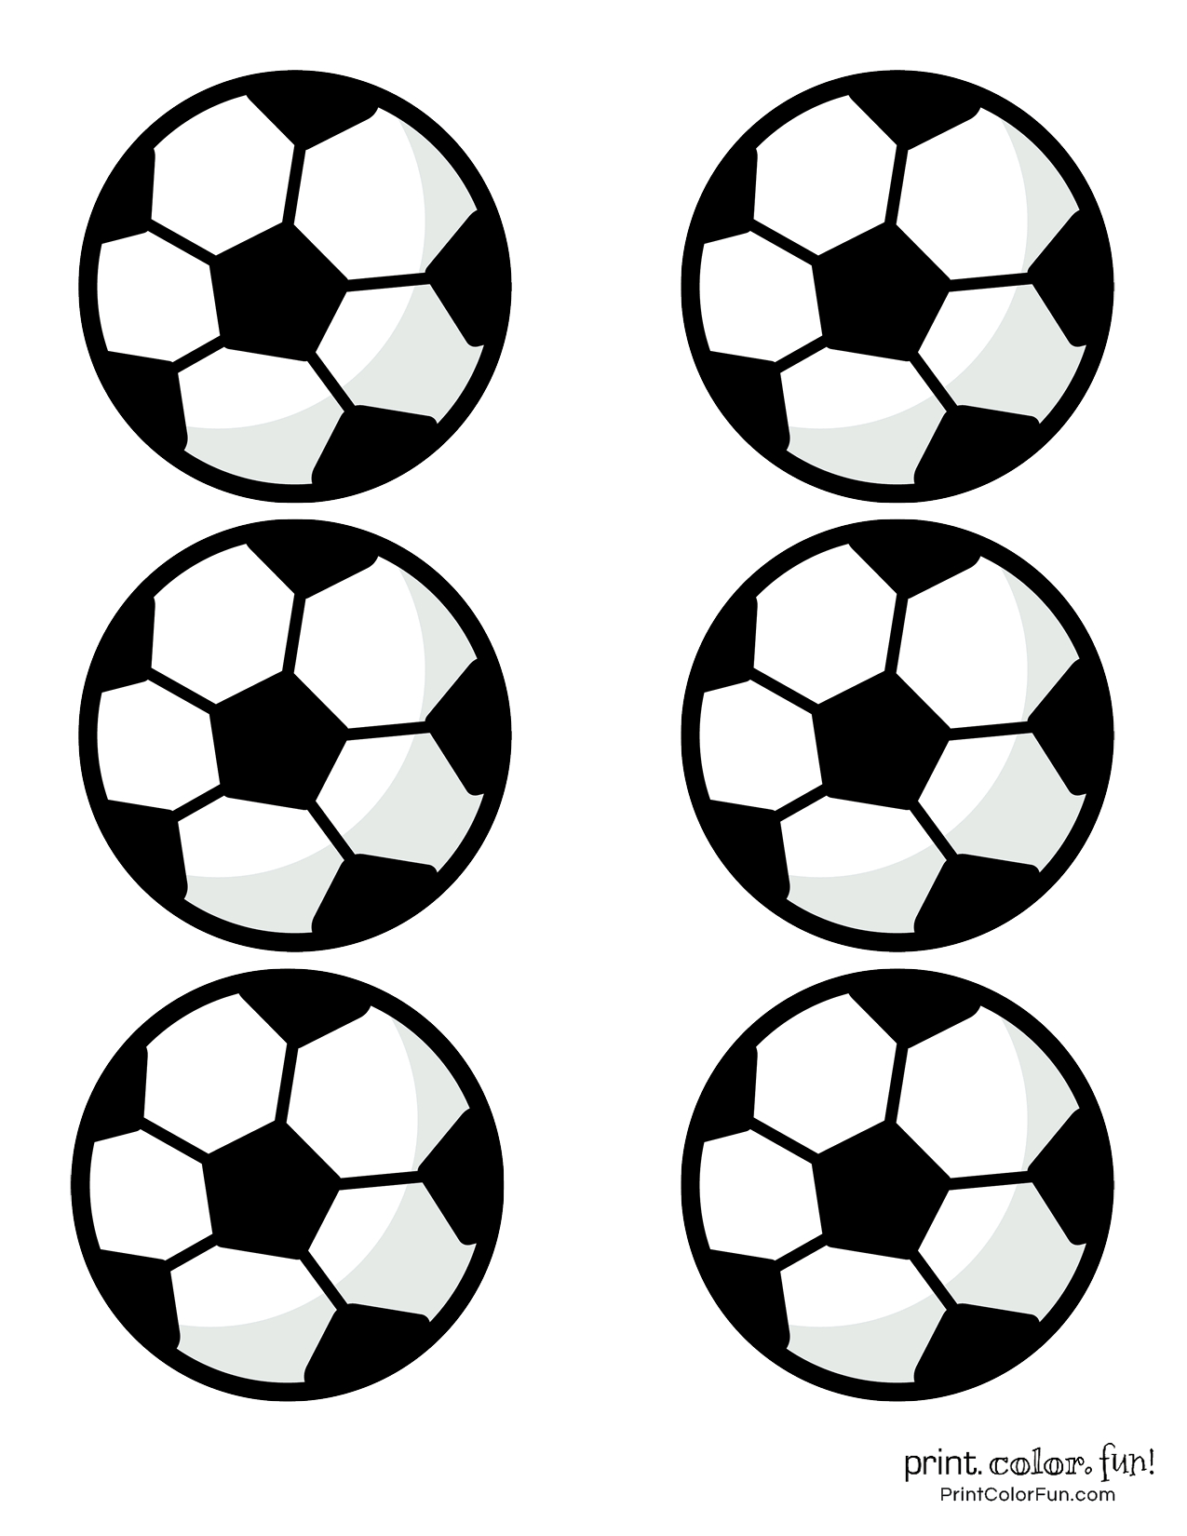 printable-soccer-ball-template-printable-world-holiday